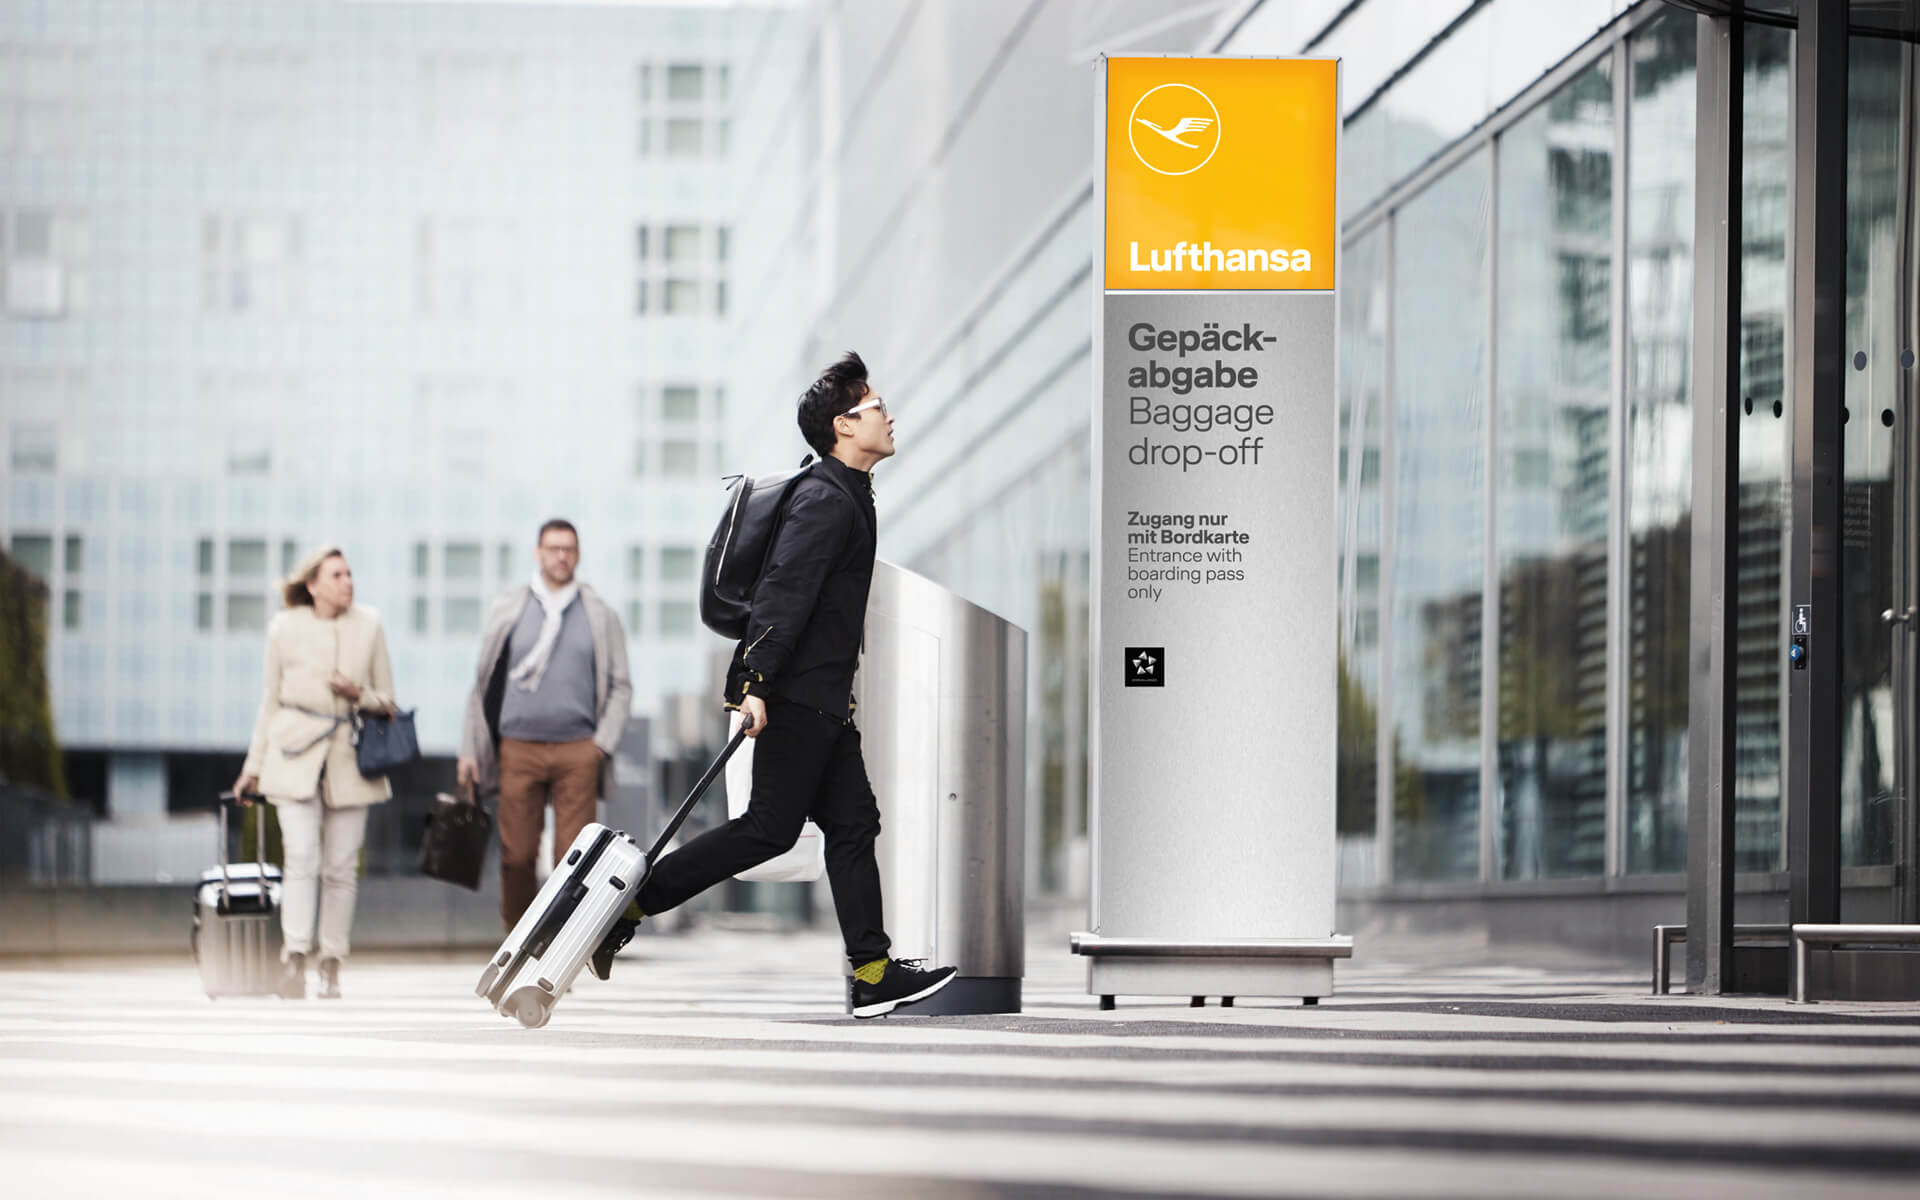 Lufthansa Corporate Design 2018, Redesign, Signage